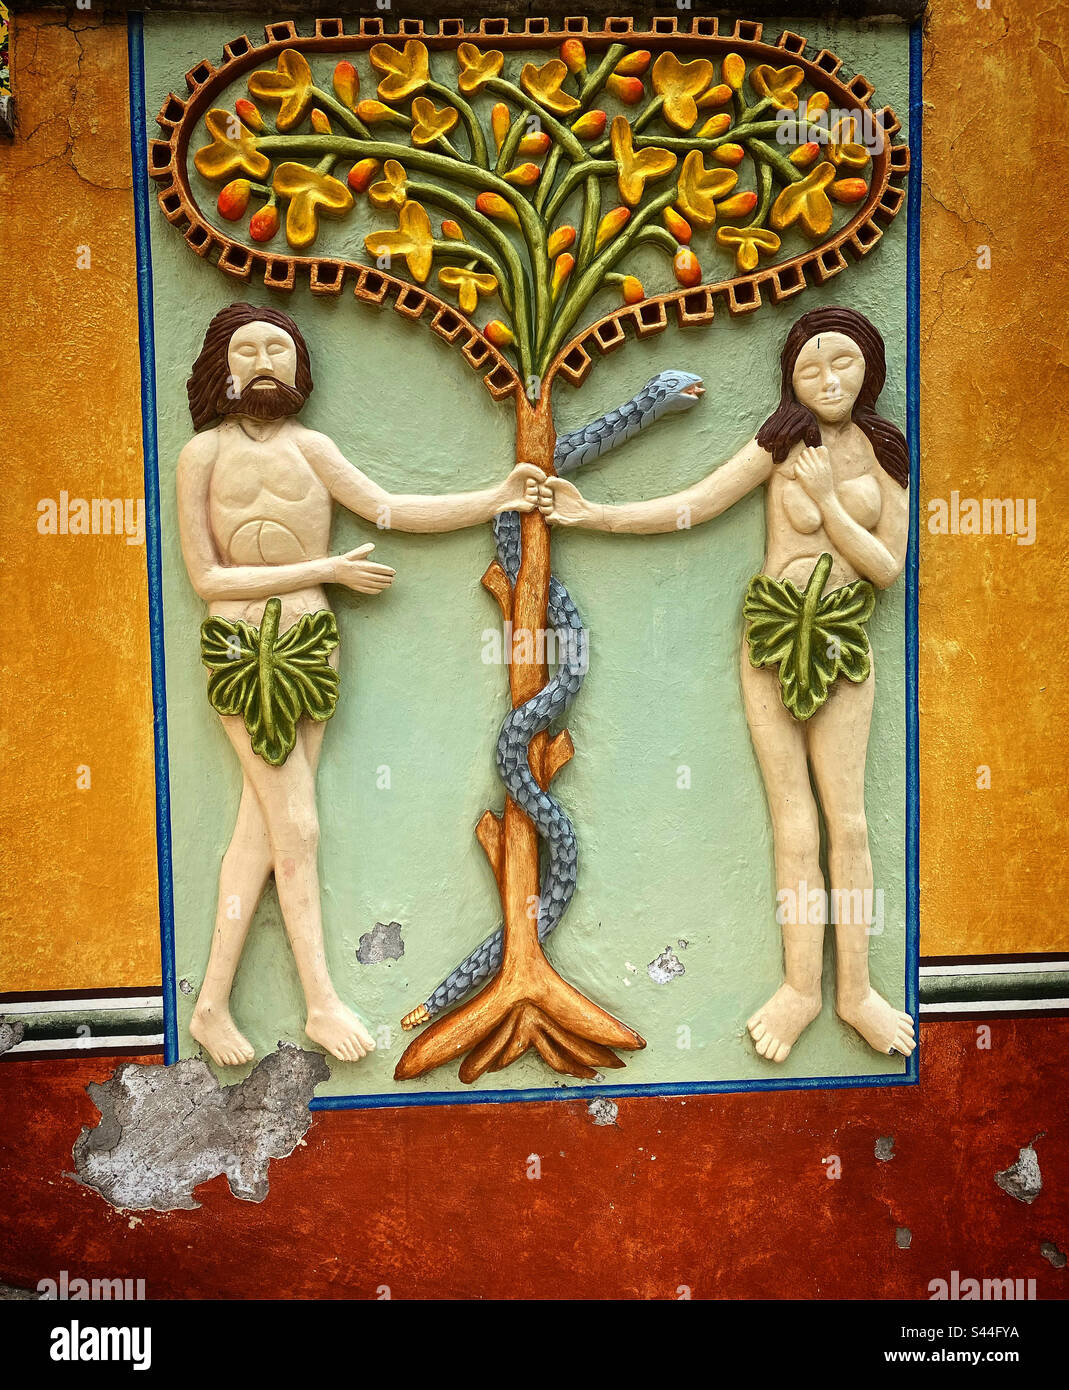 Un relief d'Adam et Eve et le vieux serpent dans l'arbre de la connaissance du bien et du mal décorent un jardin dans la Basilique de Nuestra Señora de los Dolores de Soriano à Colon, Queretaro, Mexique Banque D'Images